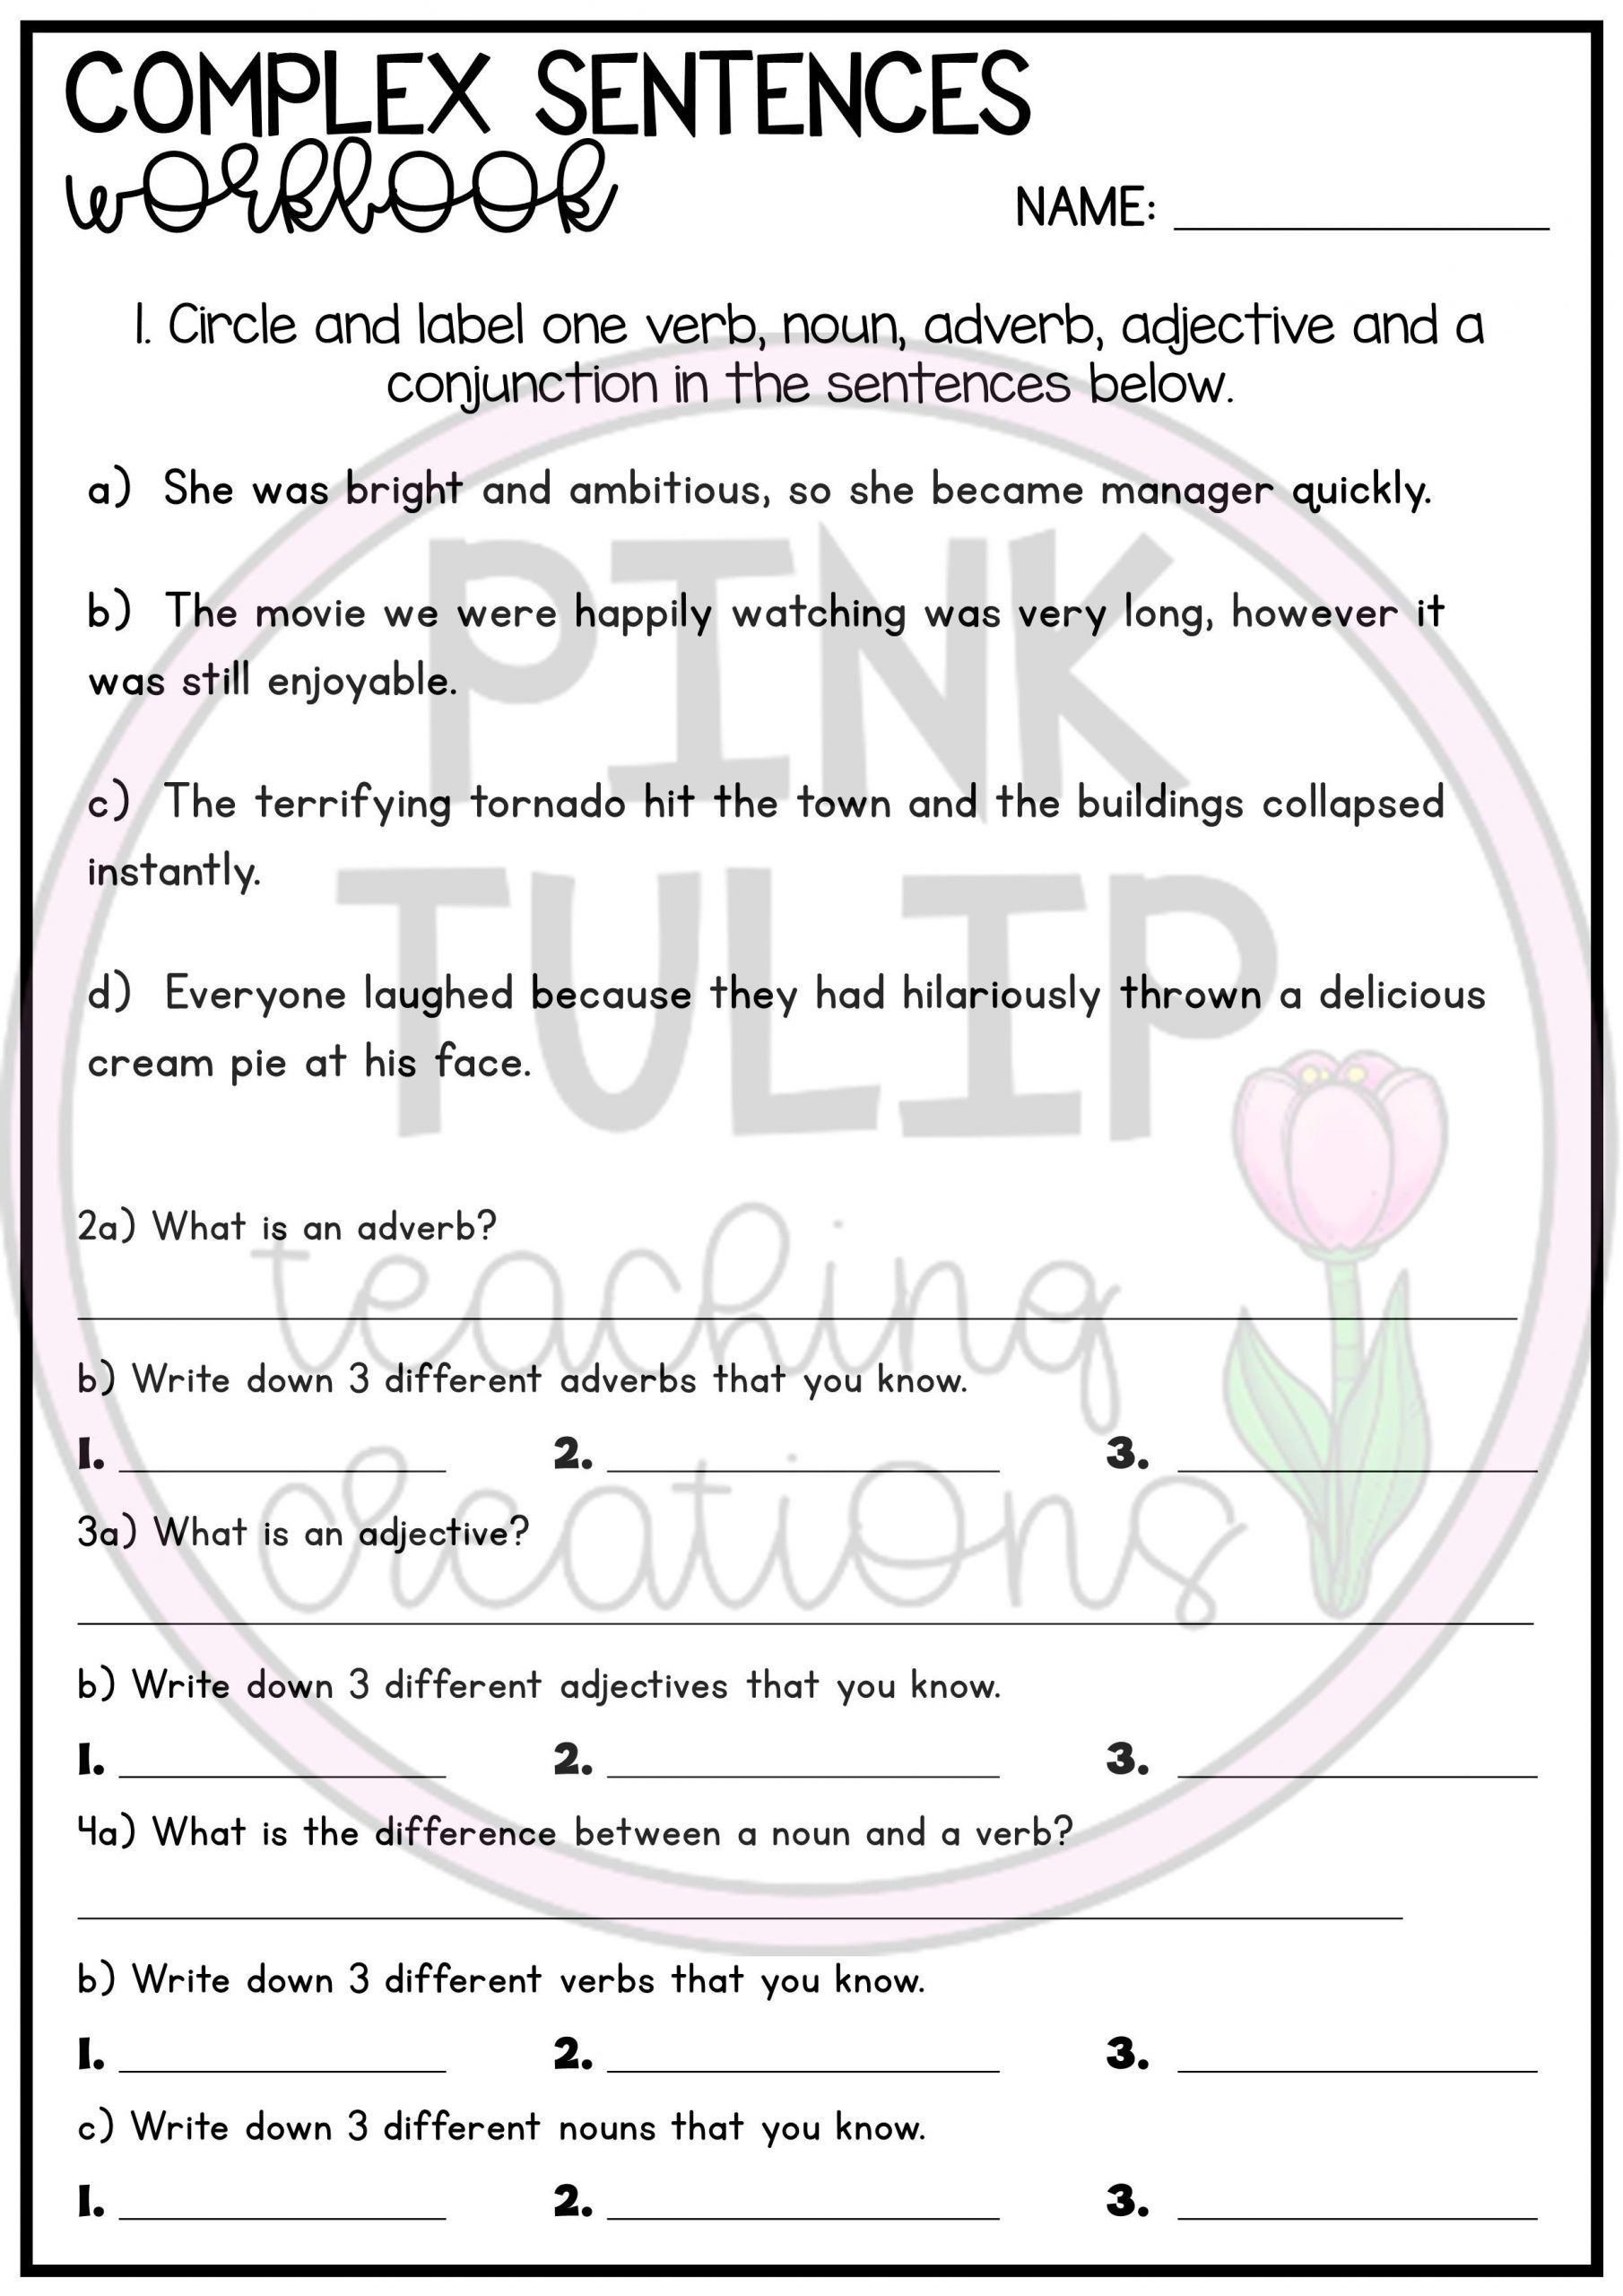 Parts Of Speech Review Worksheet Plex Sentence Workbook Grammar and Parts Of Speech